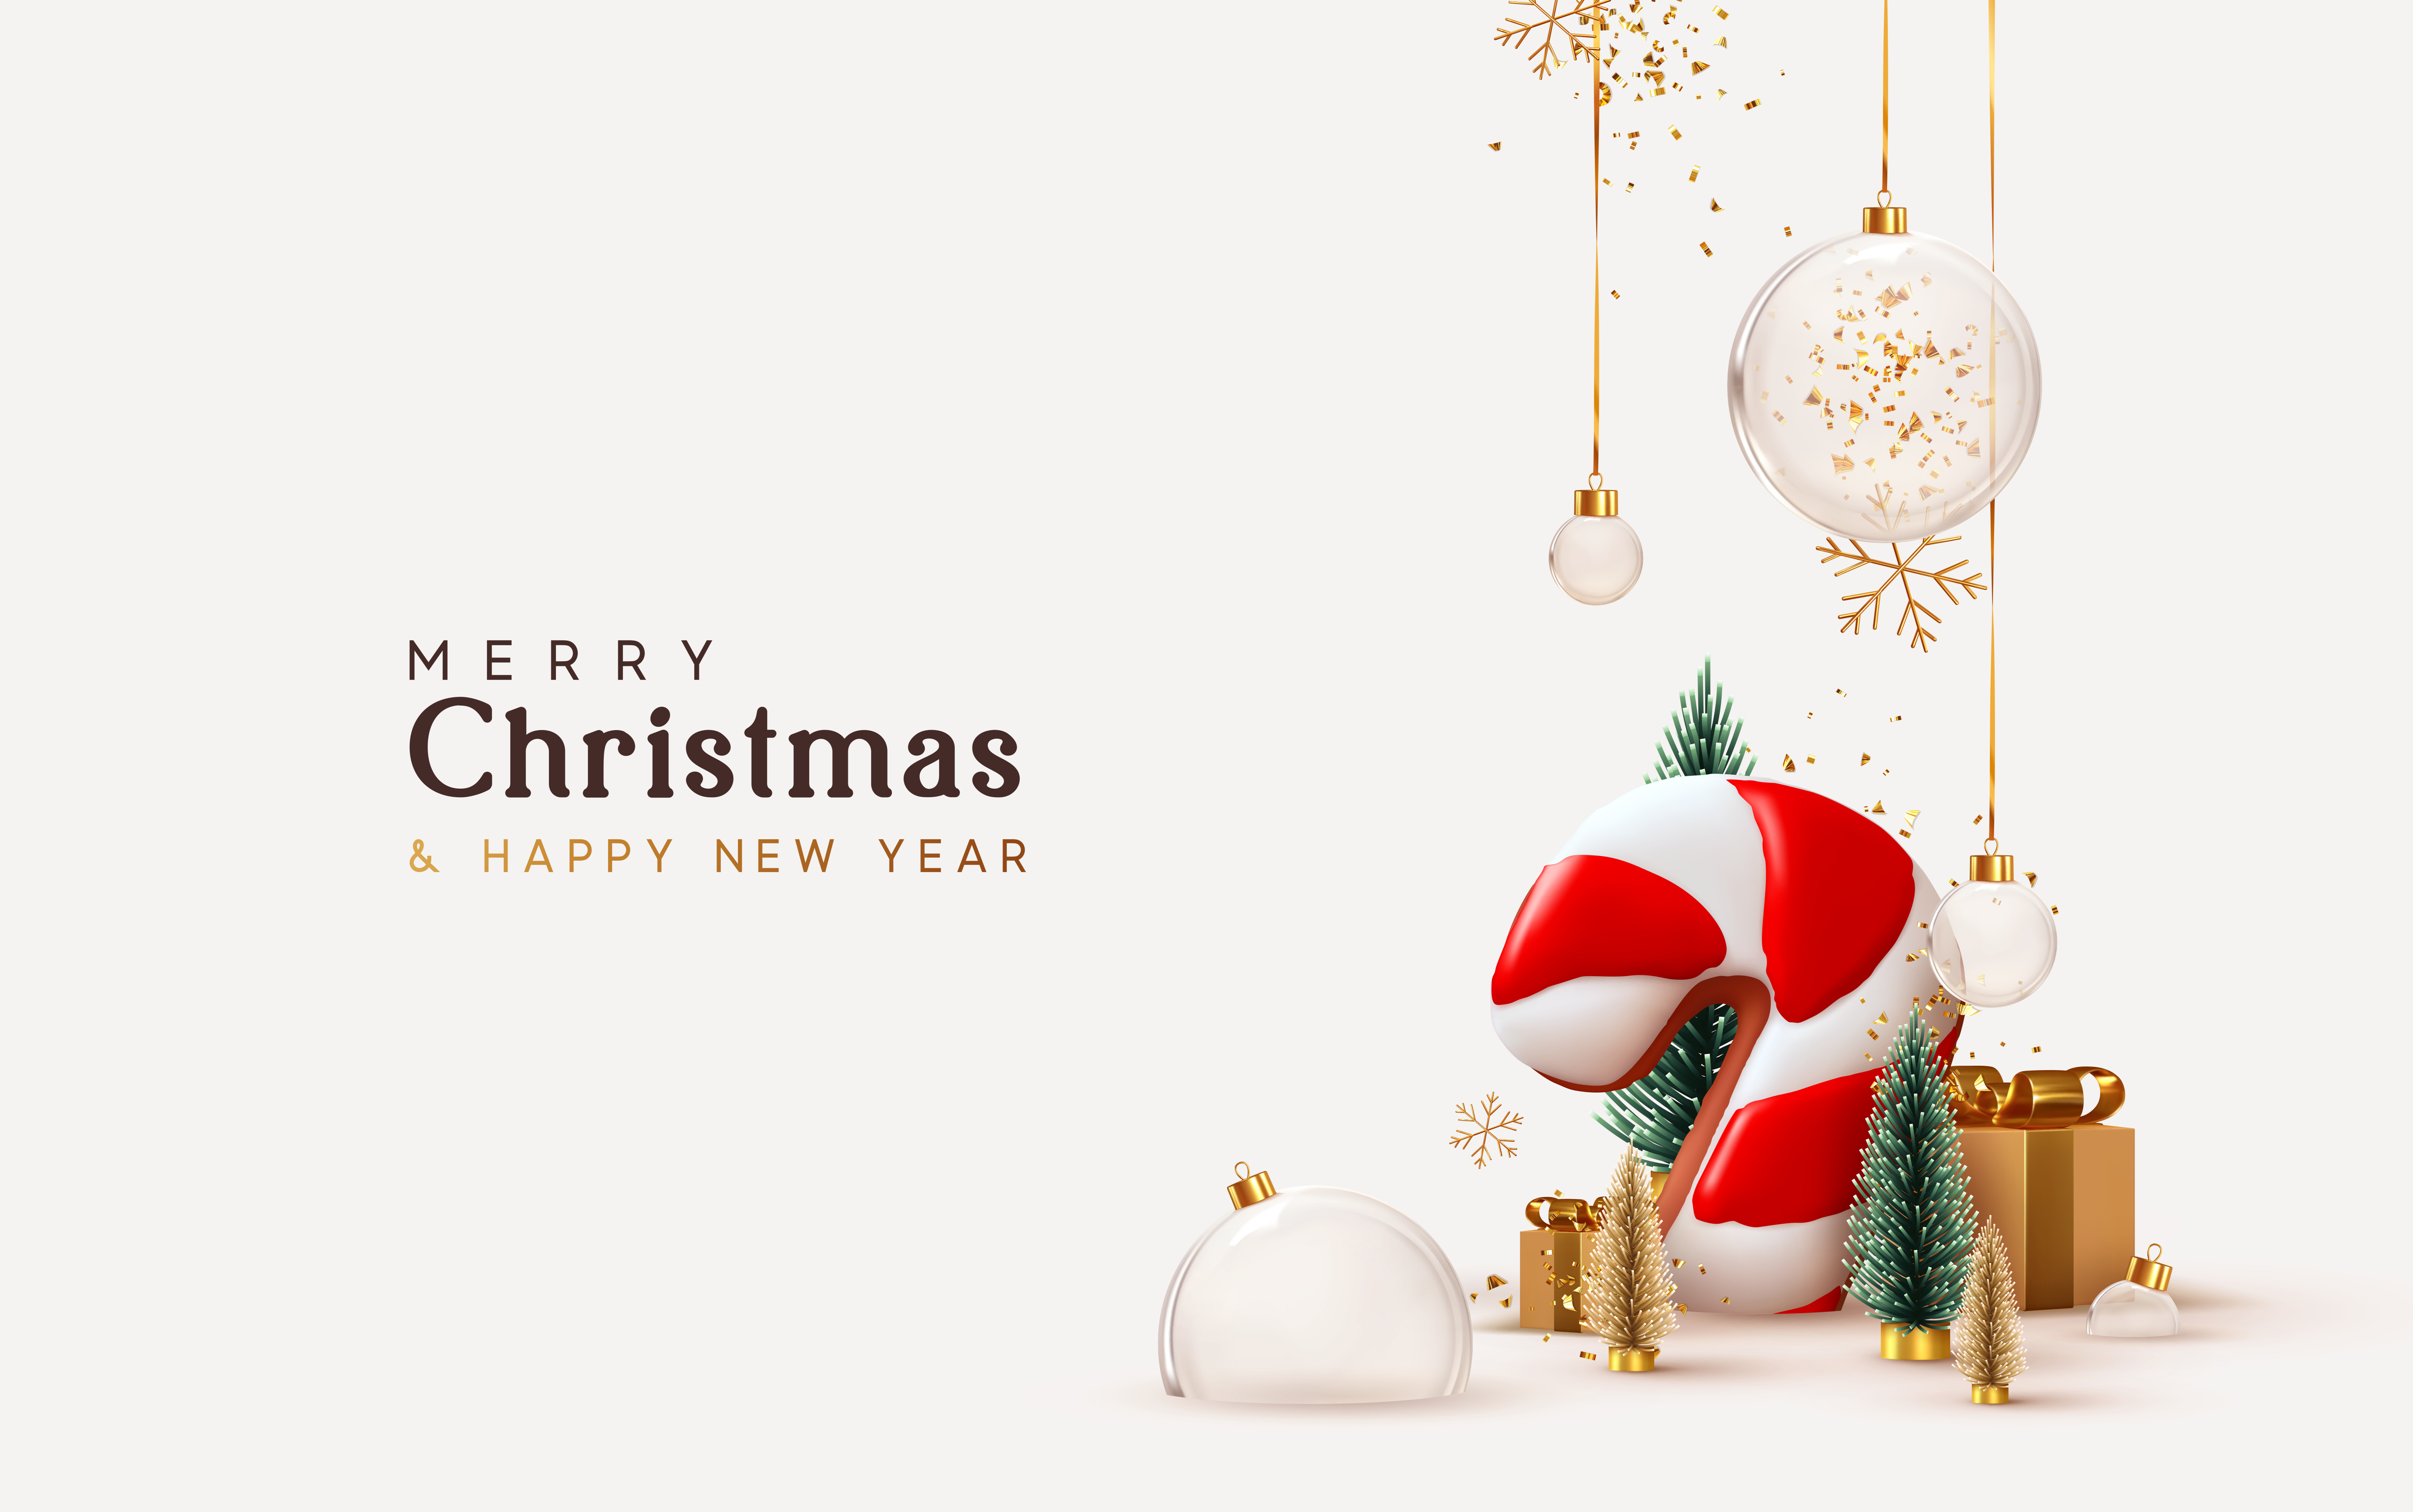 Crăciun fericit ! Mesaje frumoase de Sărbători 1670859091_shutterstock_1849988737